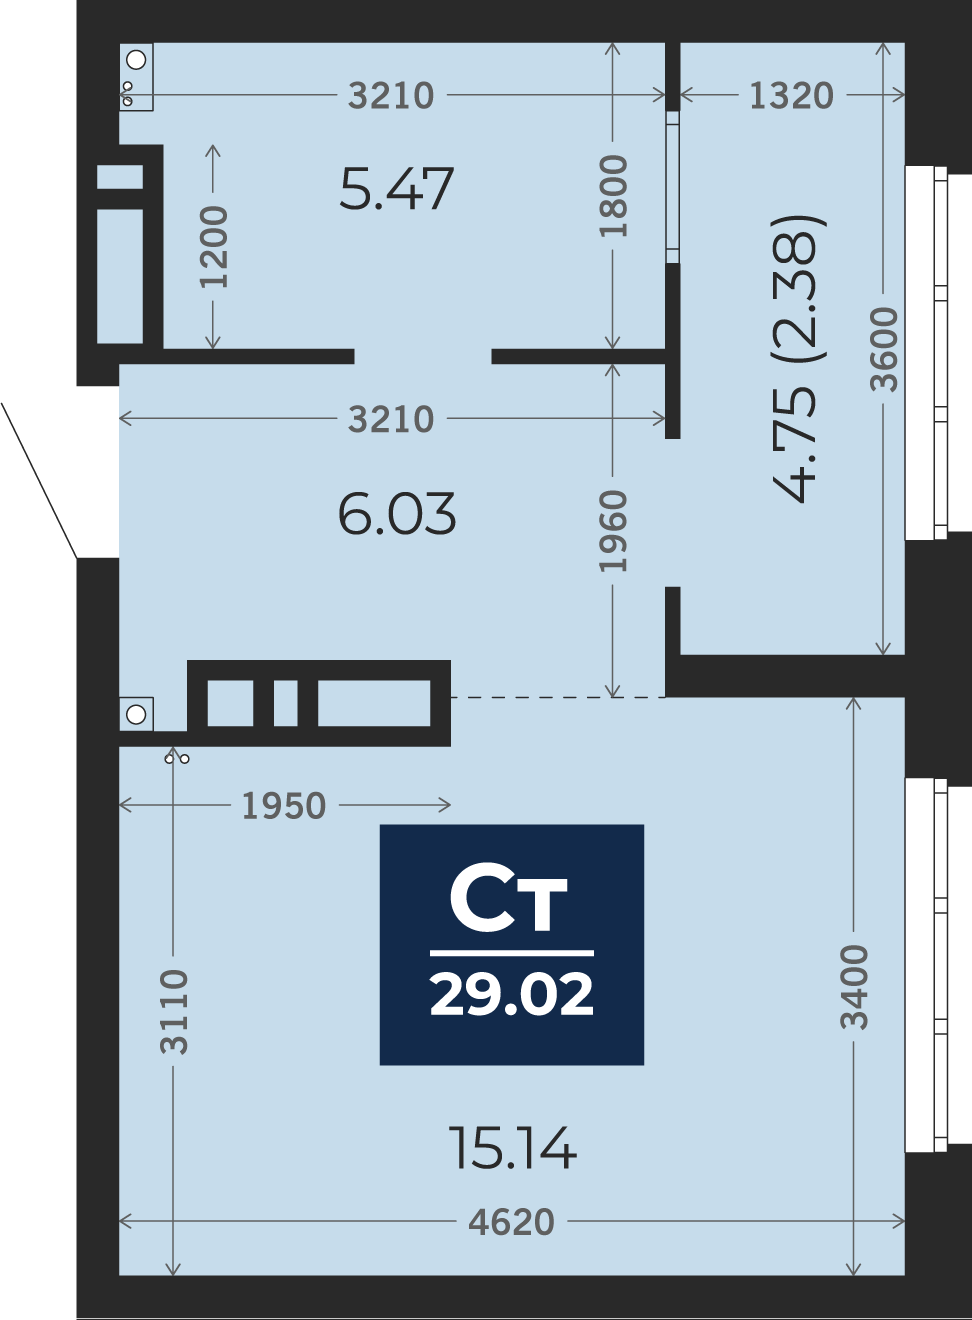 Квартира № 438, Студия, 29.02 кв. м, 21 этаж